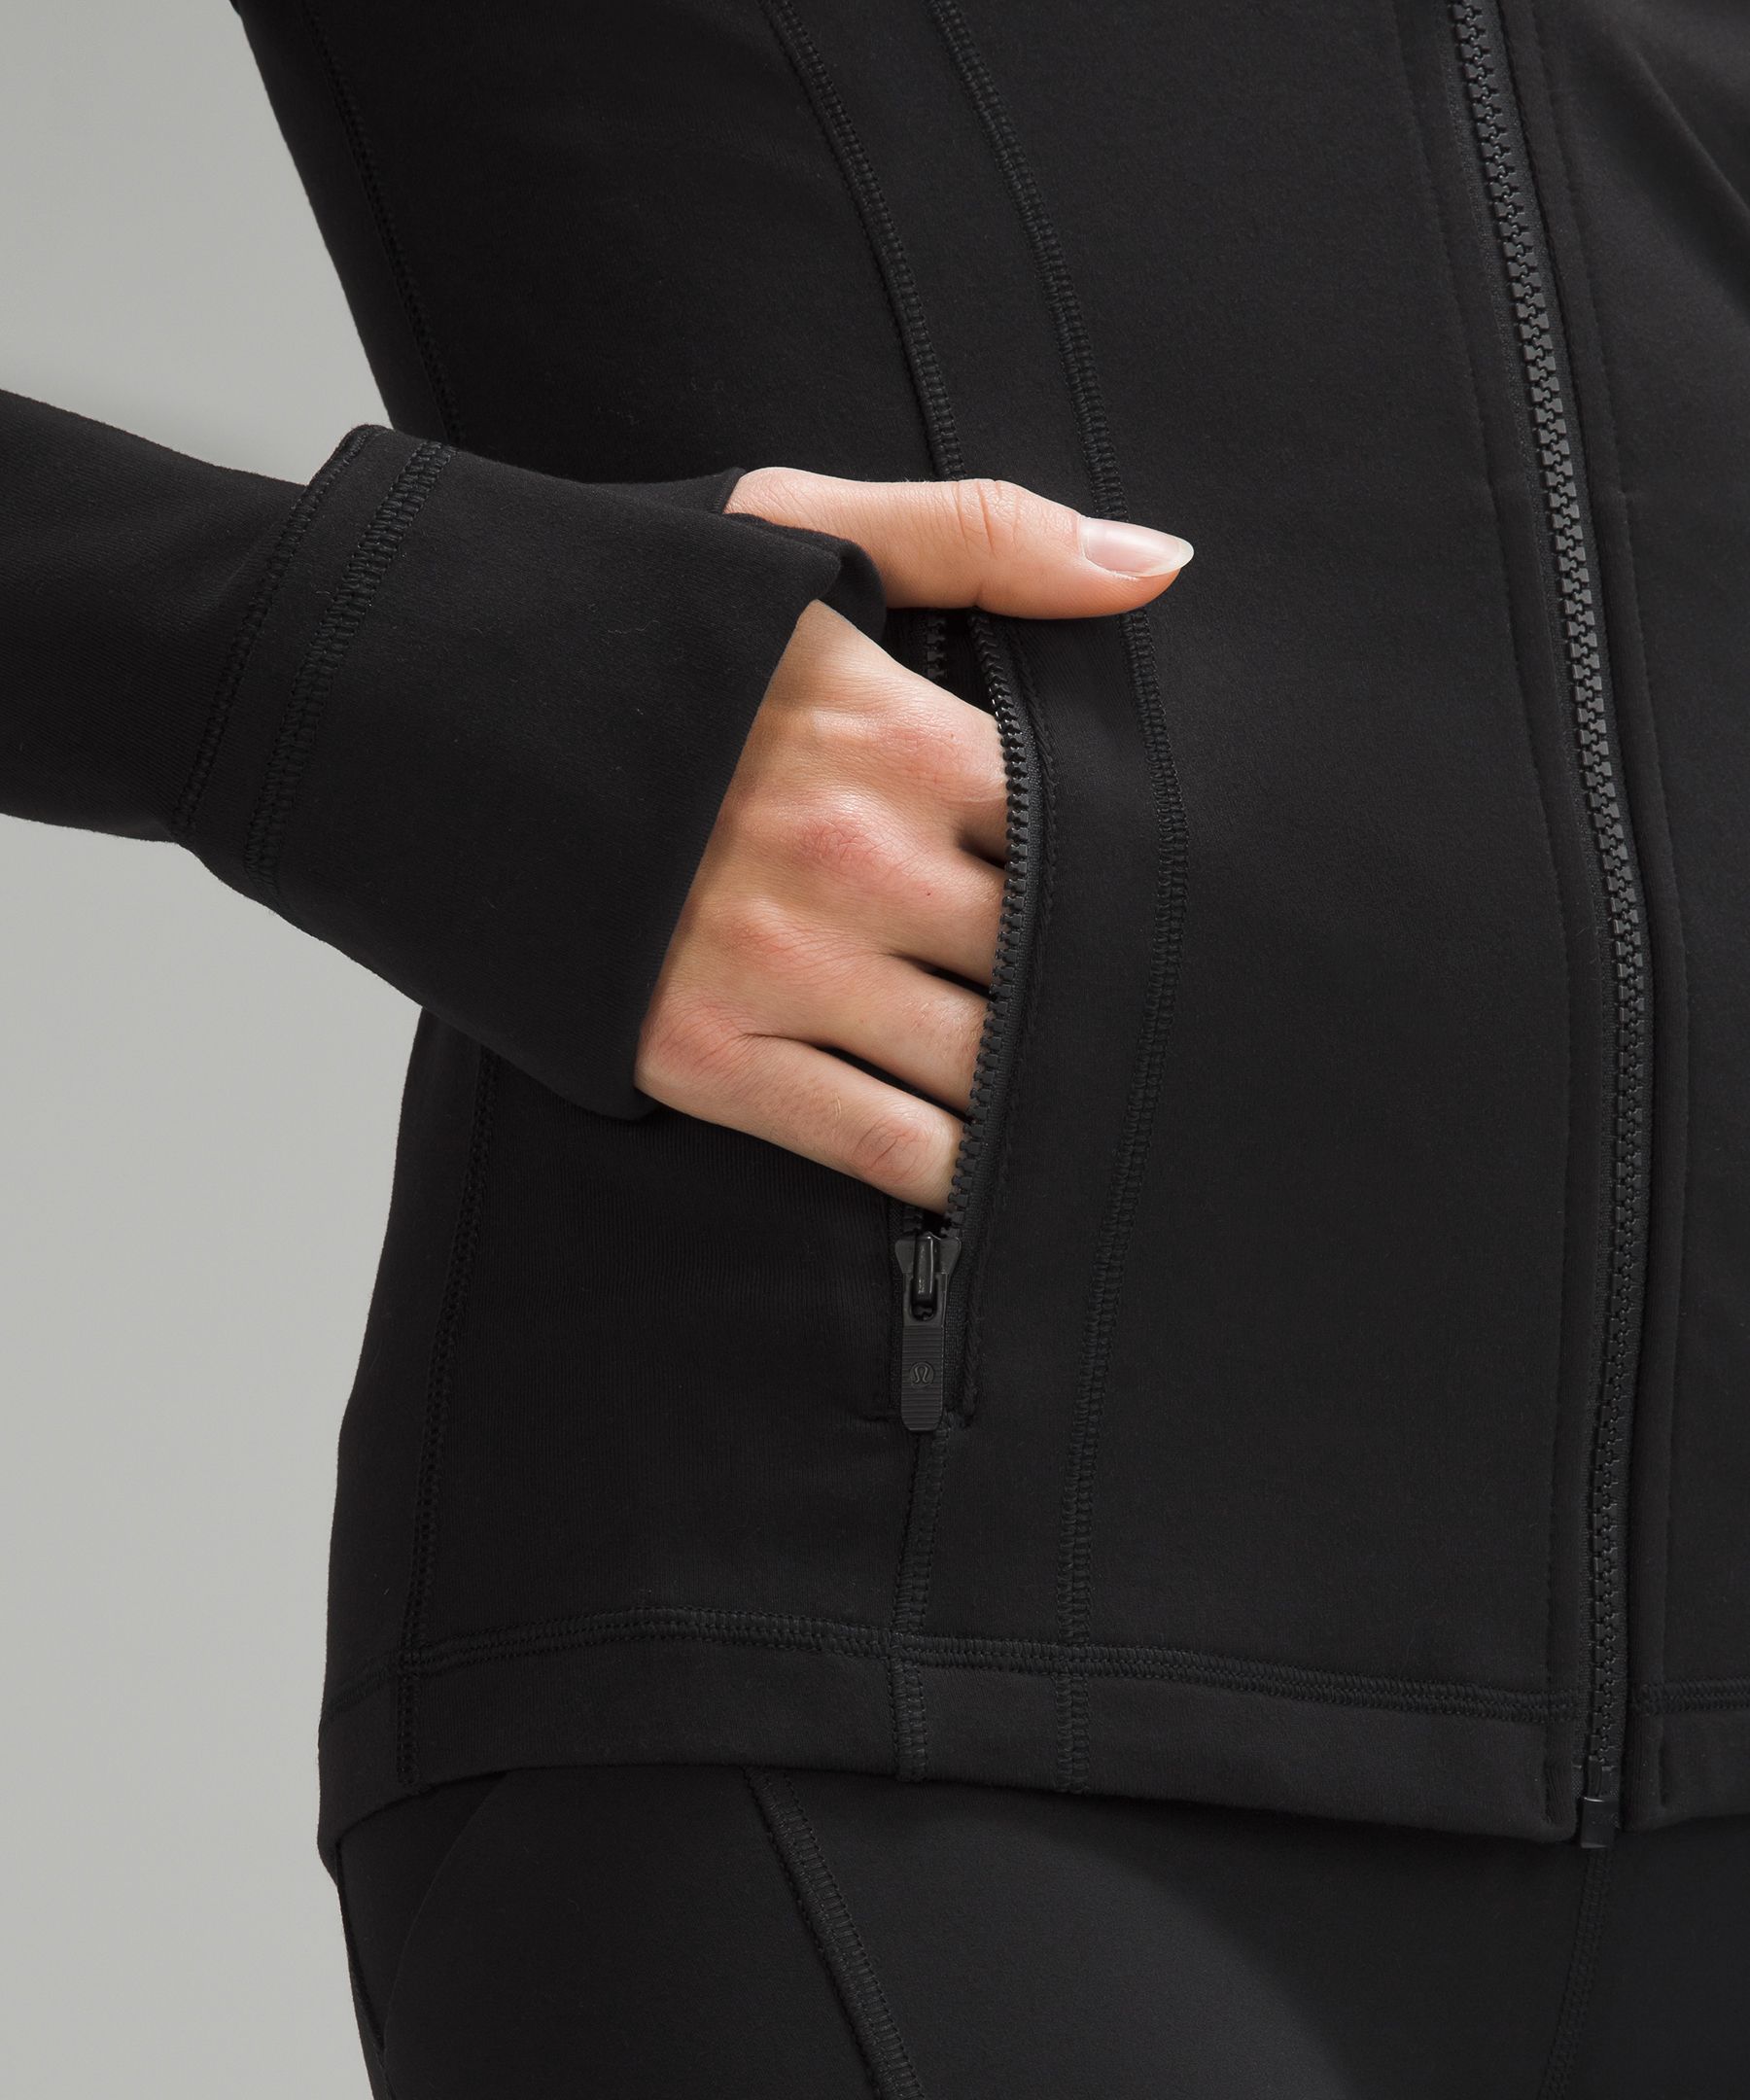 Define Jacket ES  luon variegated knit black heathered black